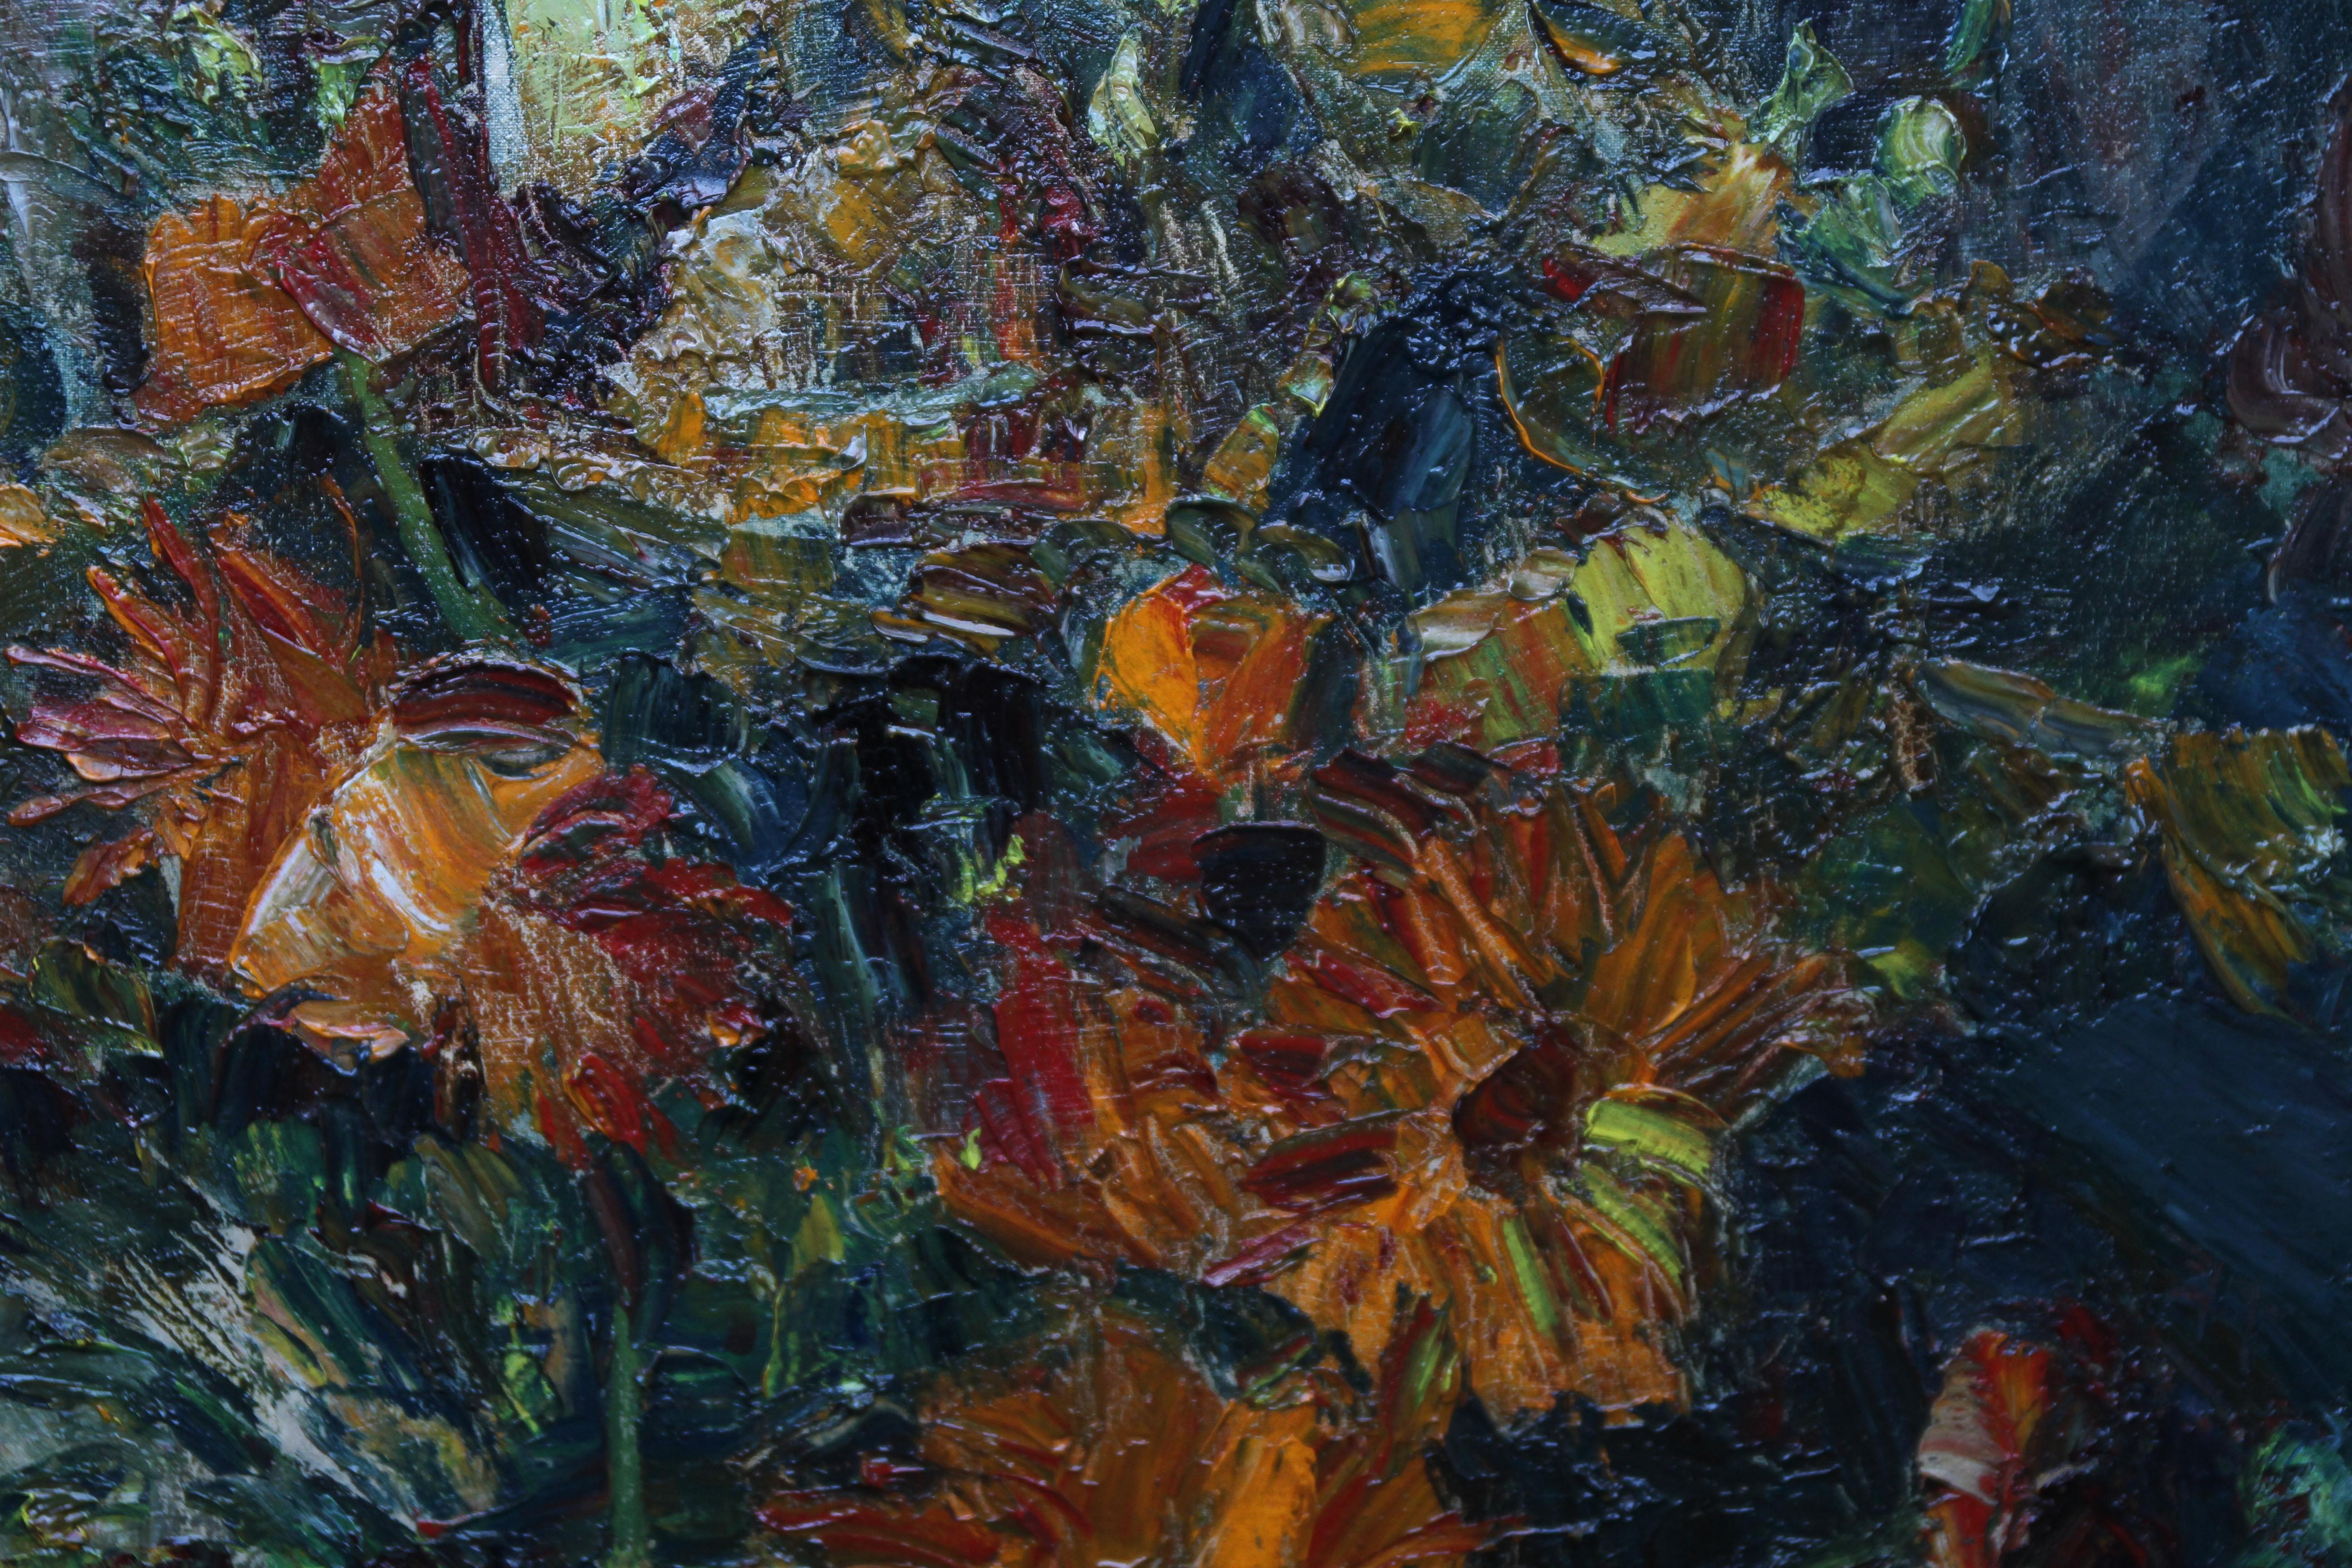 Superbe peinture à l'huile florale post-impressionniste britannique du début du 20e siècle, réalisée par le célèbre artiste britannique 